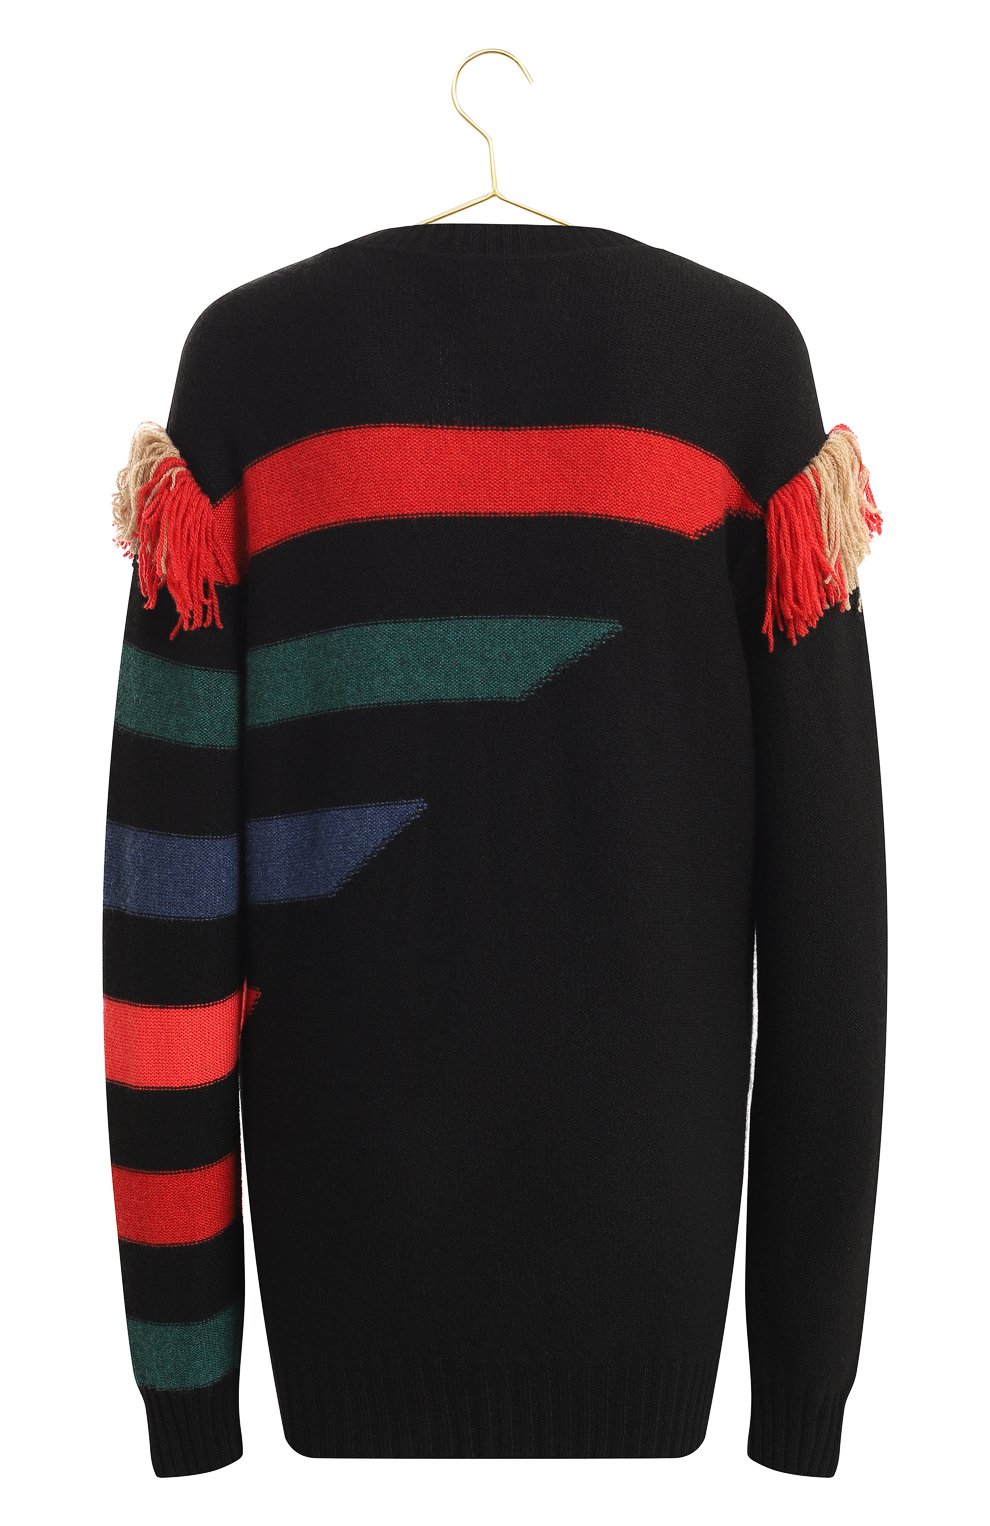 Кашемировый свитер | Sonia Rykiel | Разноцветный - 2